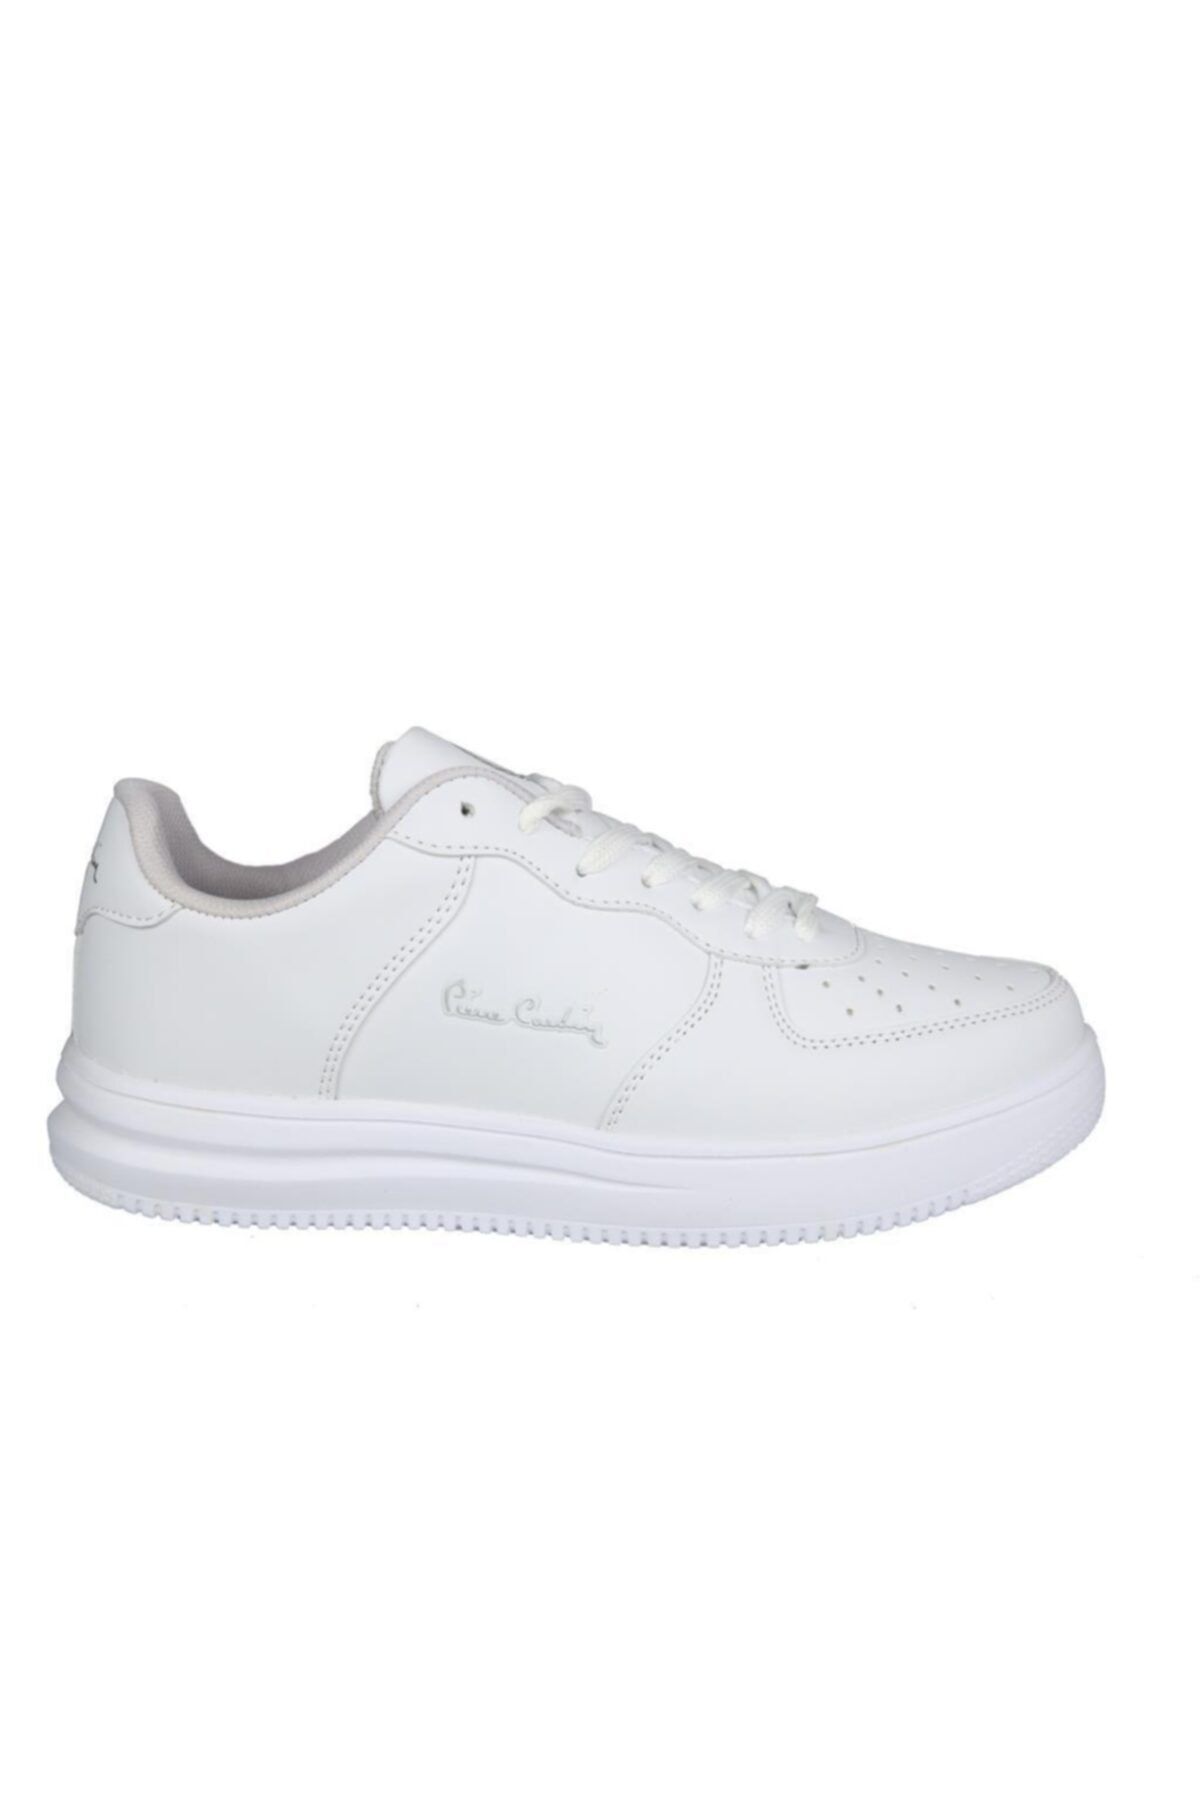 Pierre Cardin Pcs-10148 Beyaz Unisex Sneakers